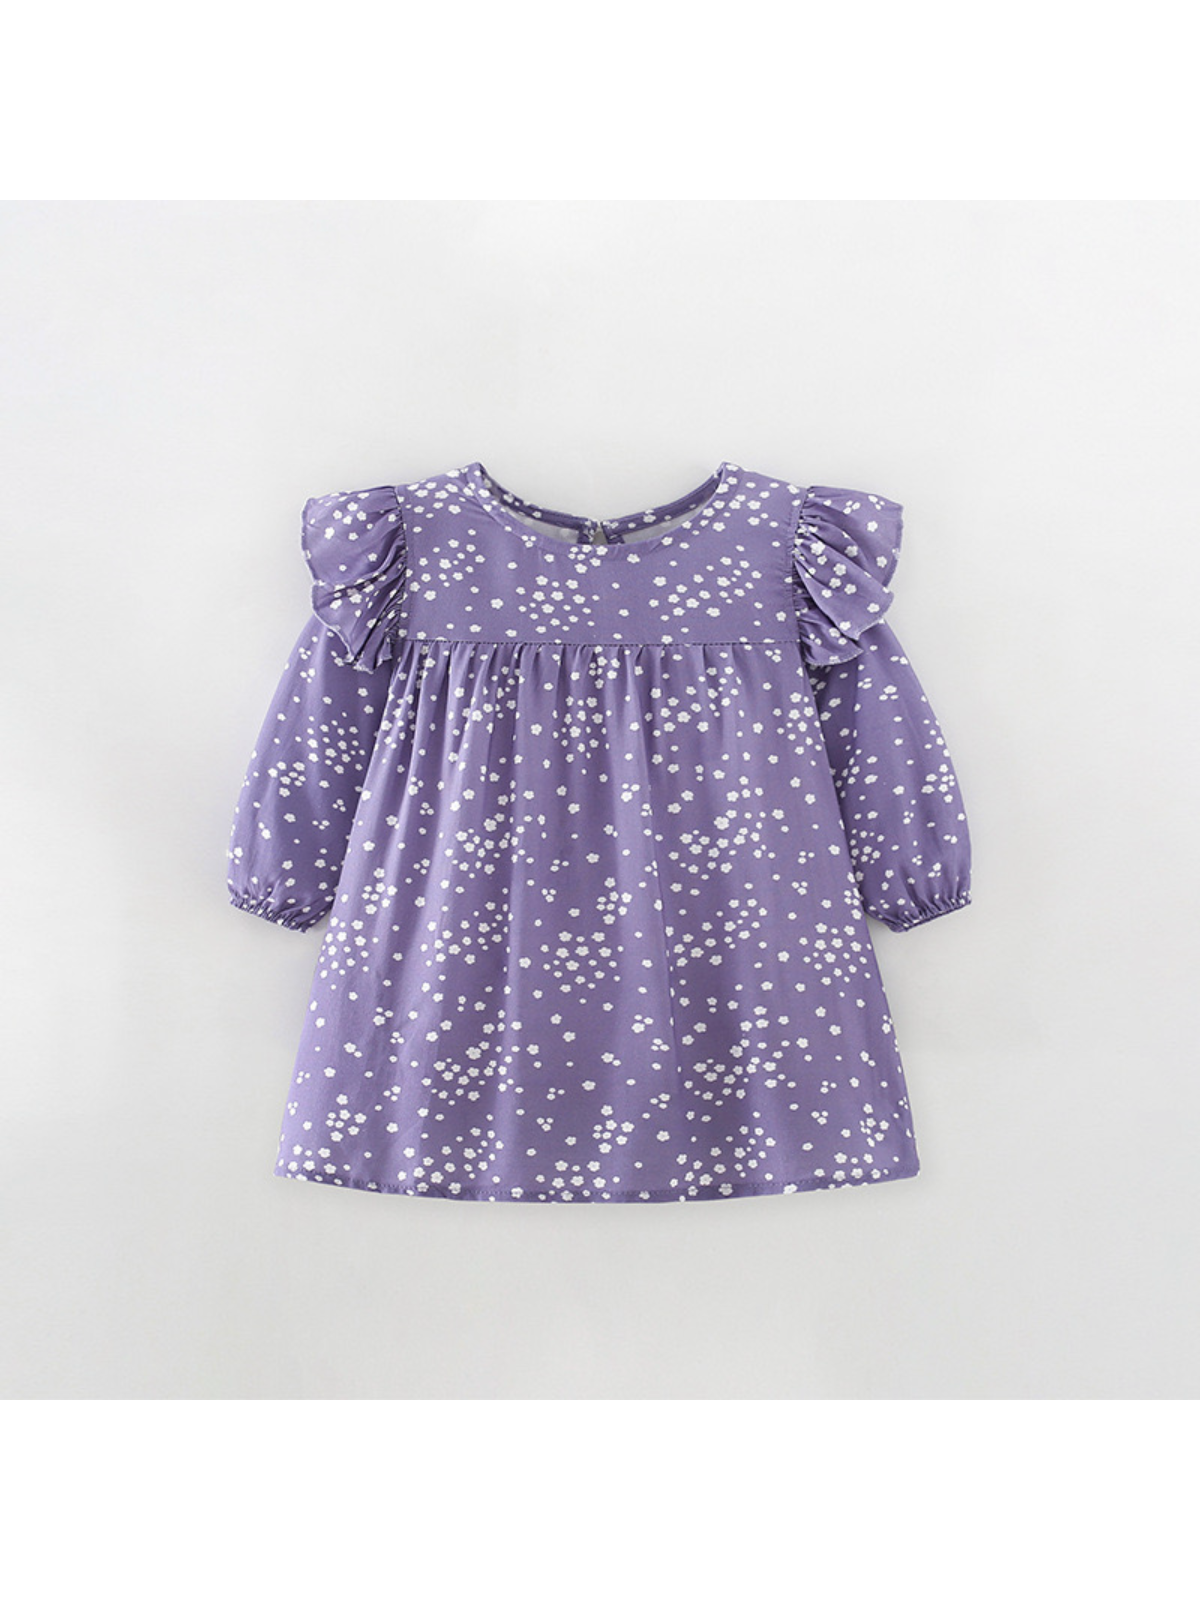 Purple flower ruffle long sleeves Dress